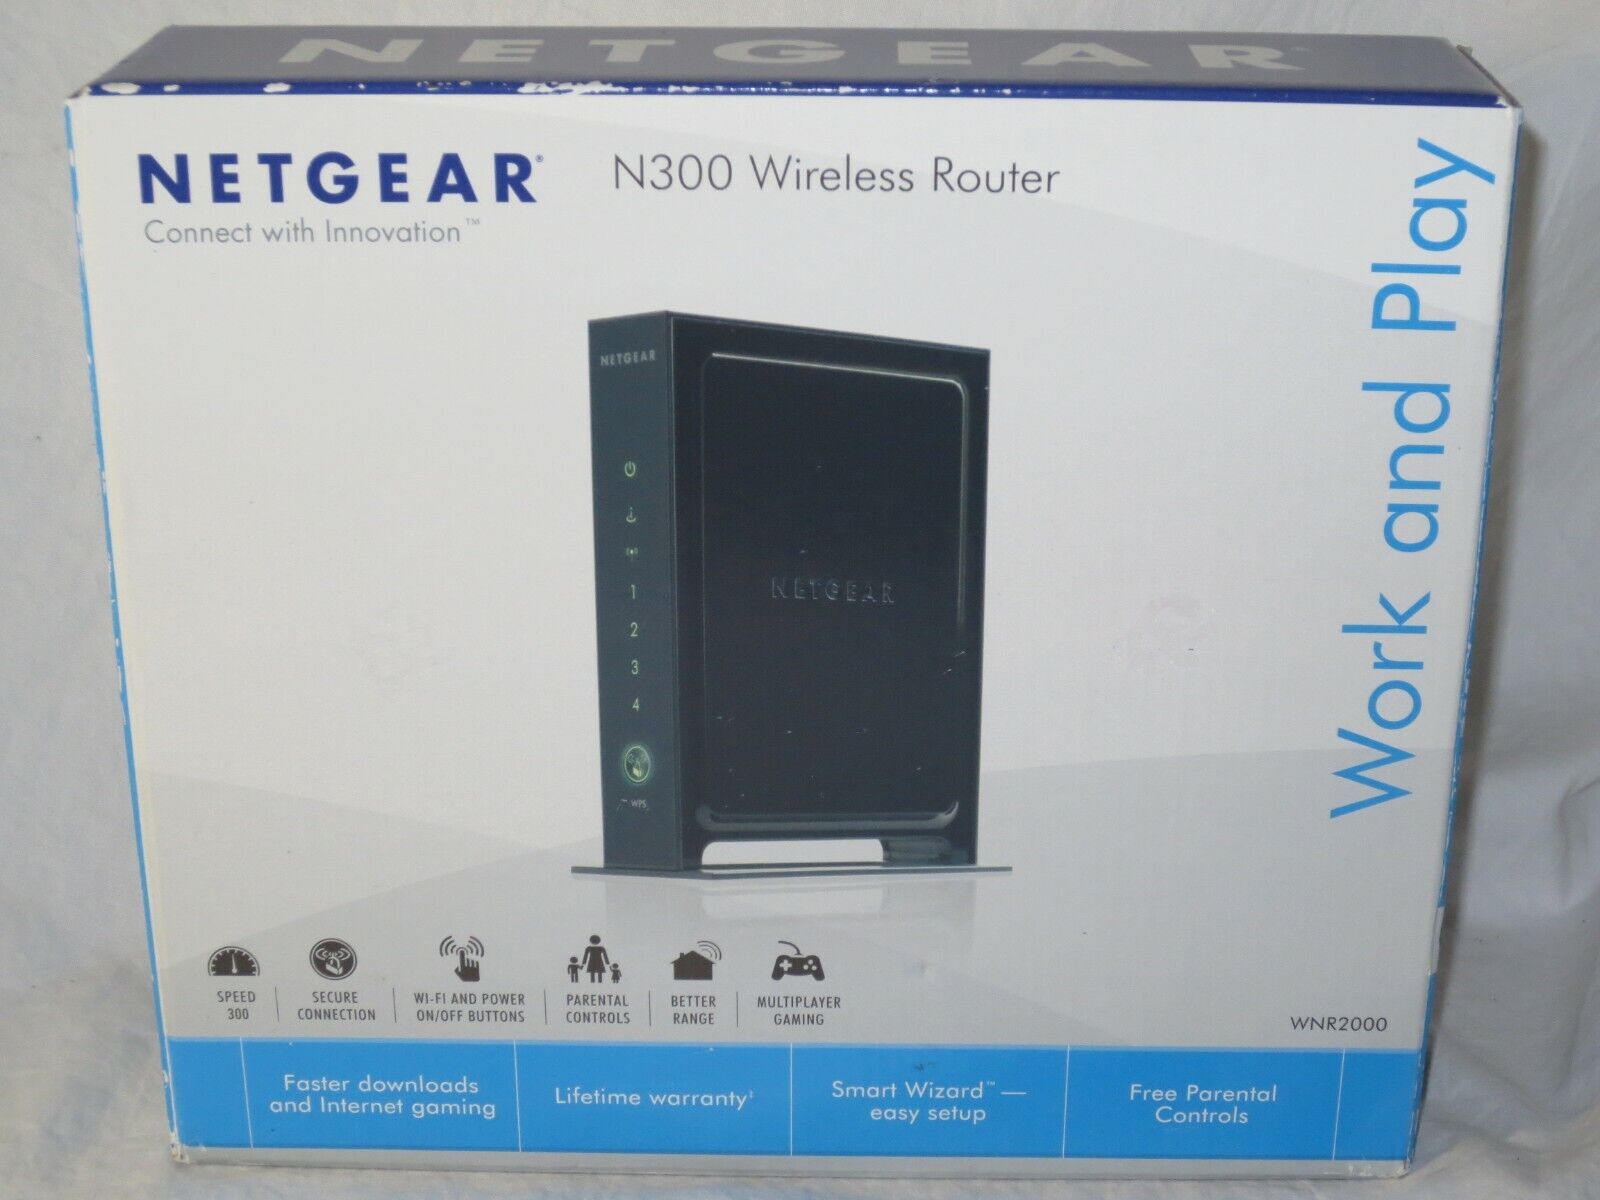 NETGEAR N300 Wi-Fi Wireless Router Model WNR2000